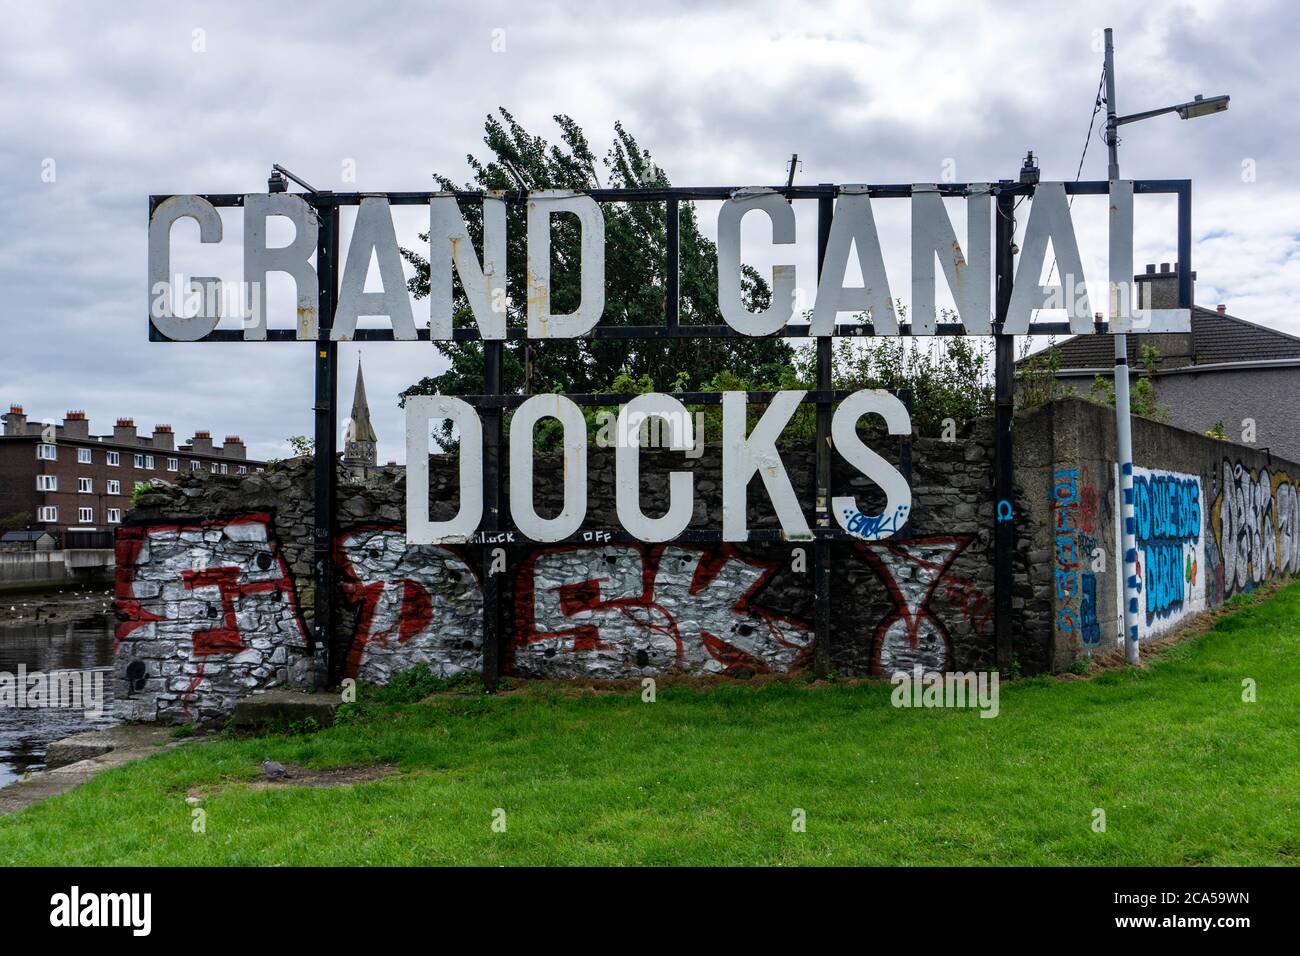 Grand Canal Docks. Il vecchio cartello per Grand Canal Docks, Dublino, Irlanda, accoglie le persone in un'area che è cambiata oltre ogni riconoscimento. Foto Stock